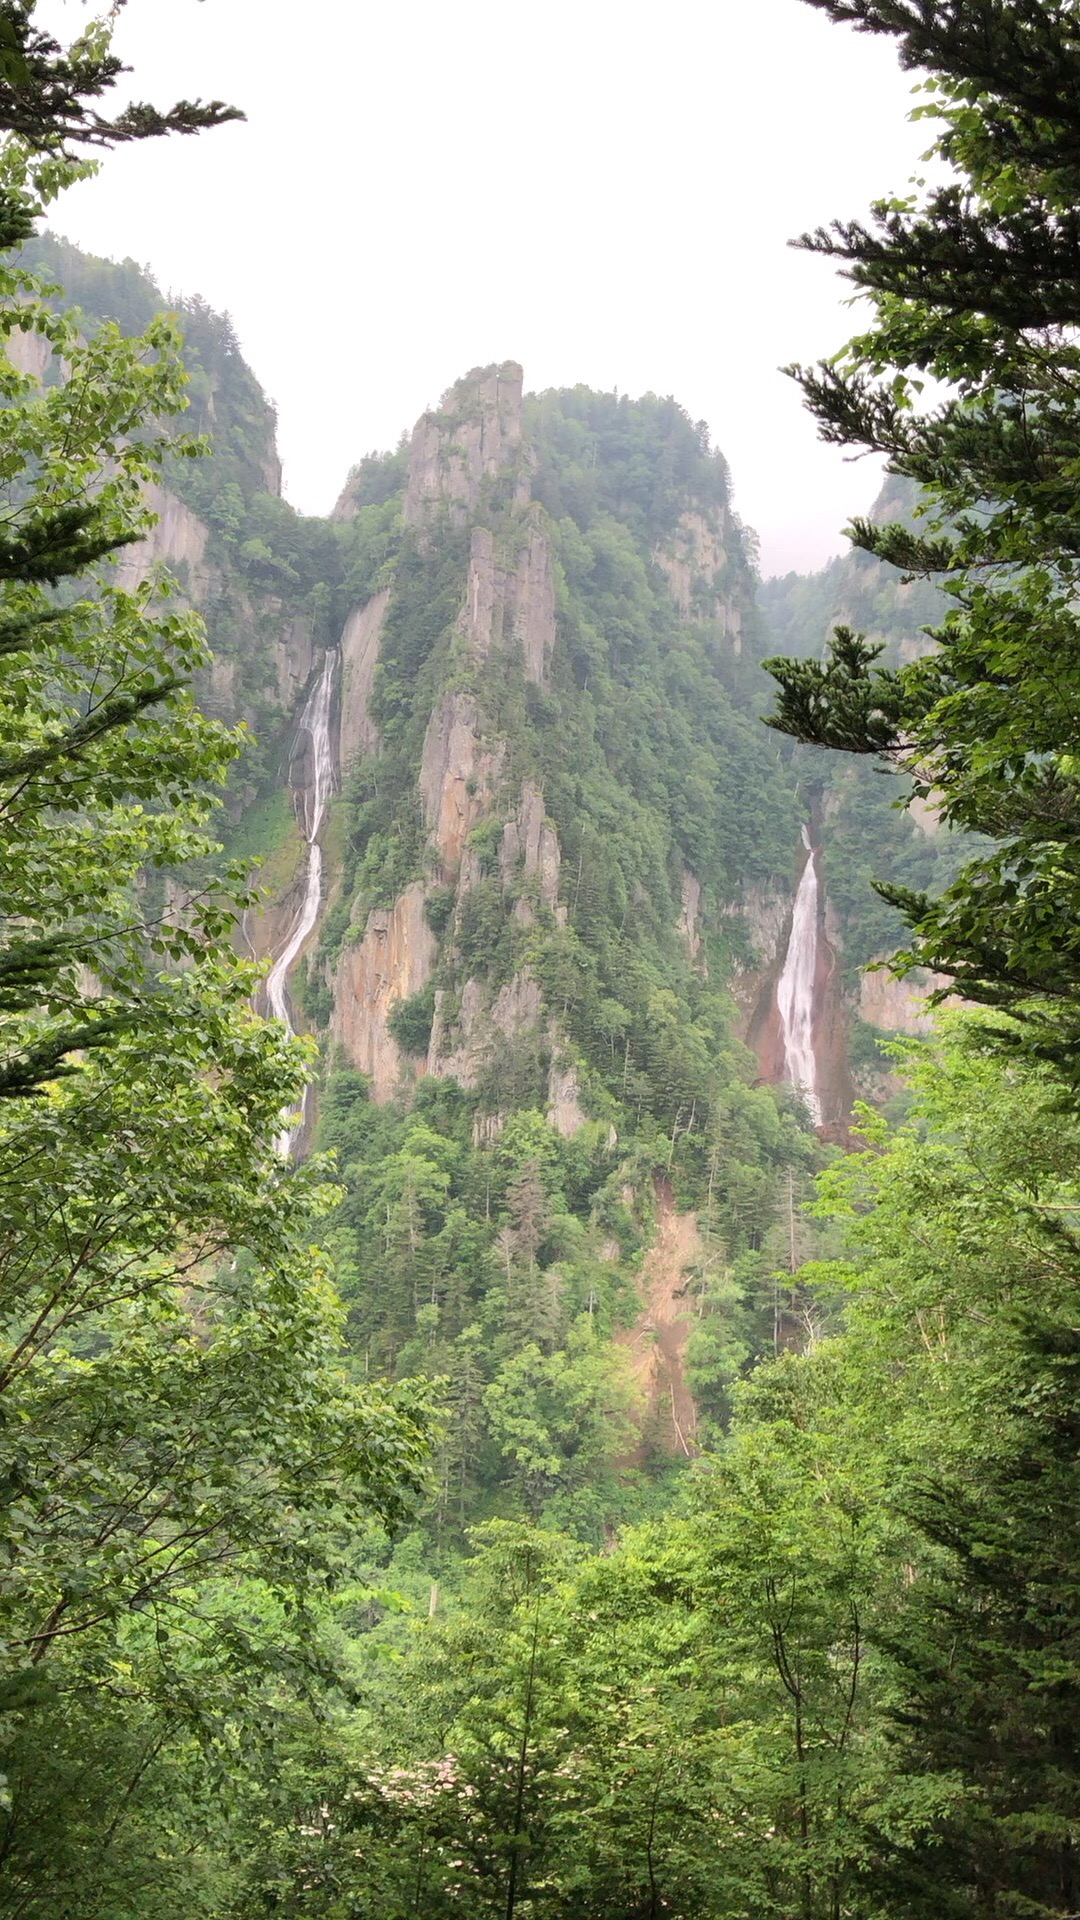 北海道大雪山国立公园层云峡溪谷的双子瀑布： 银河瀑布与流星瀑布，宛如两束银线从天而降，飞流直下500